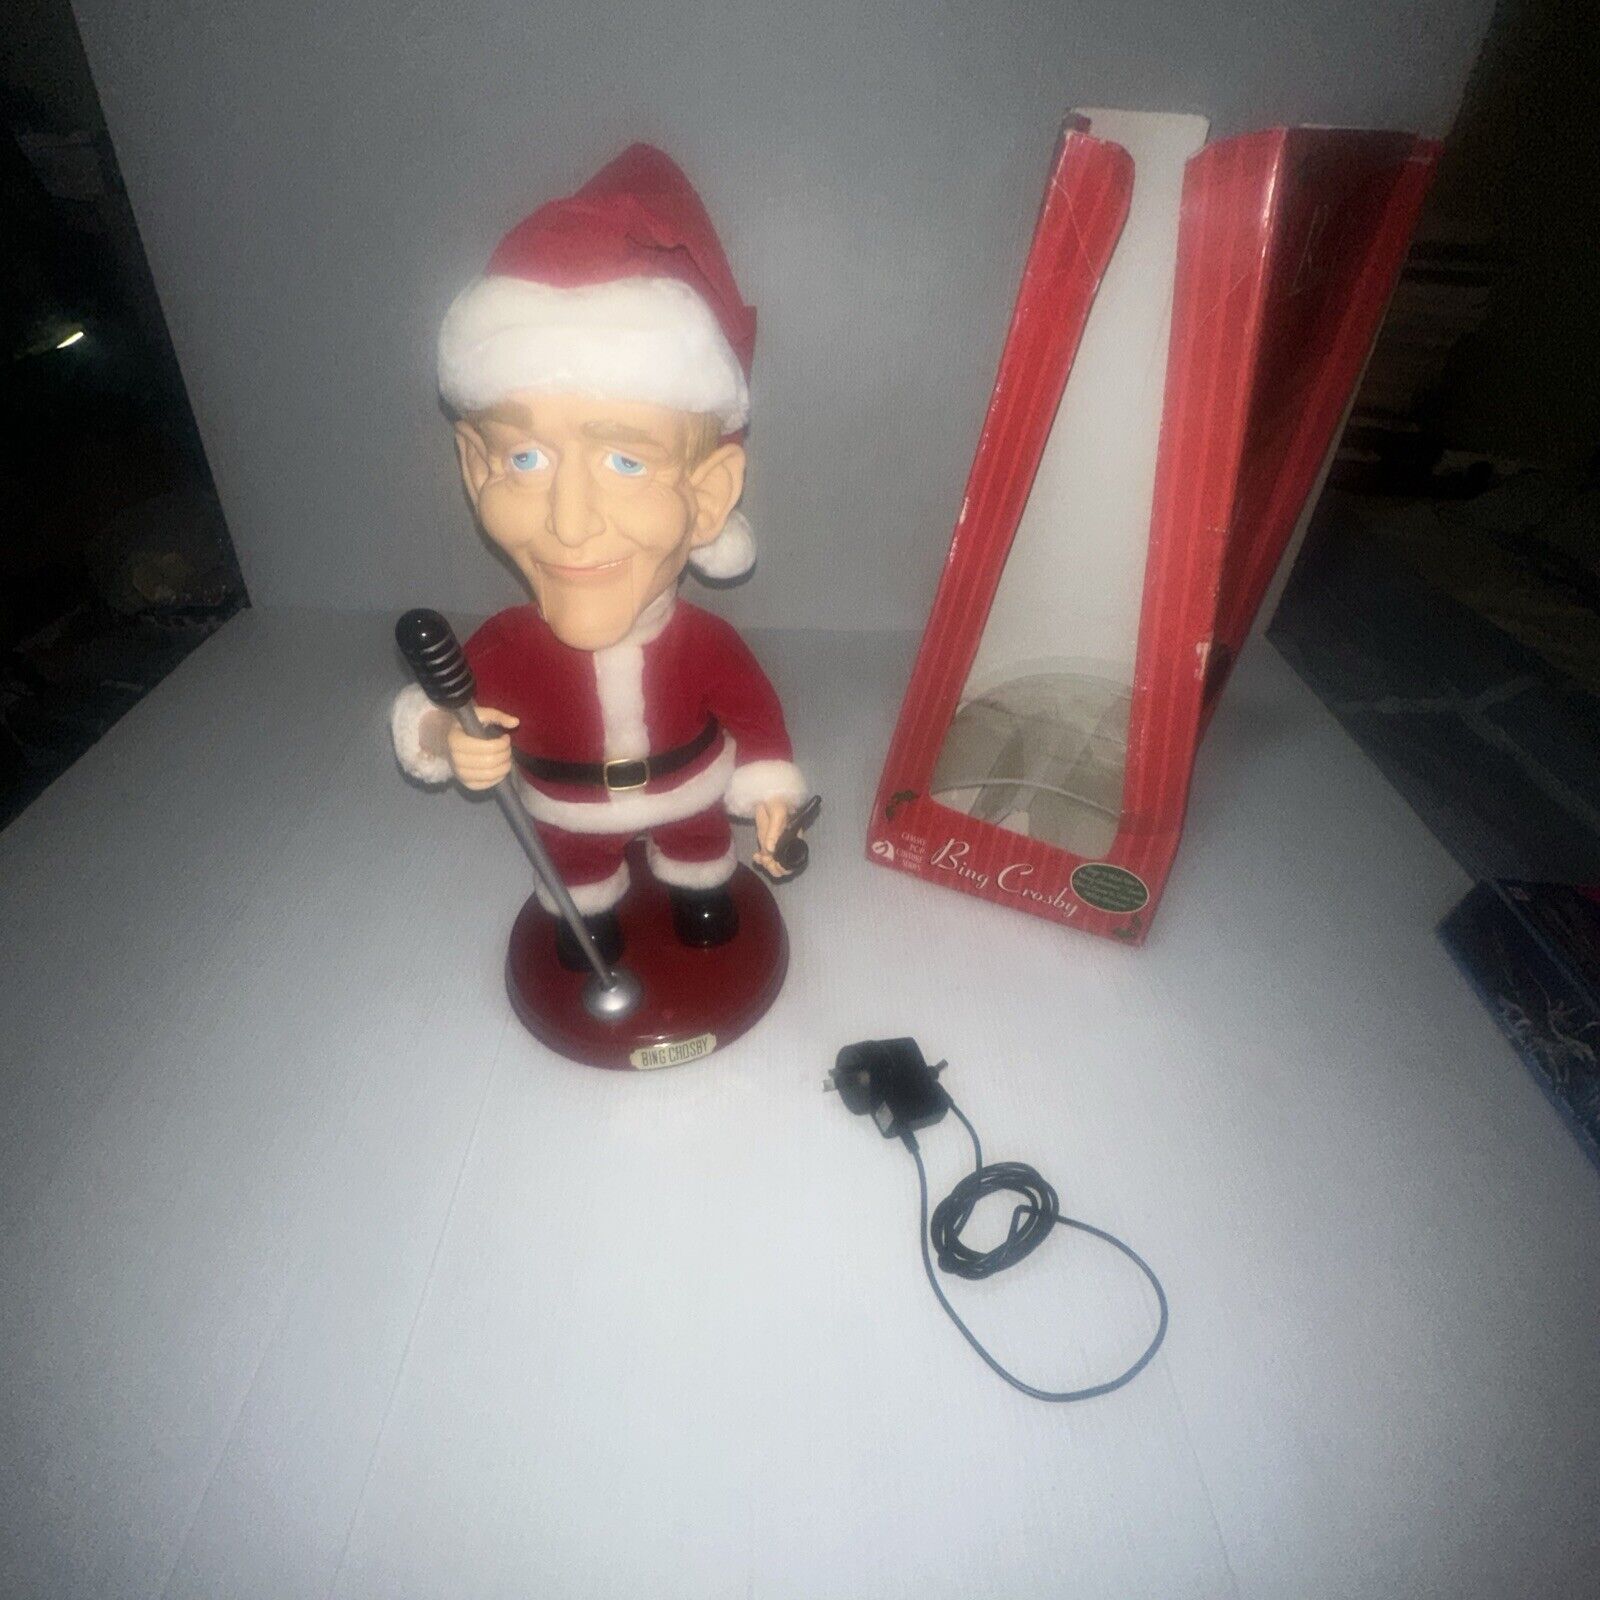 VTG 2001 Gemmy 19” Singing Swinging Bing Crosby Santa Doll With Box Works Well